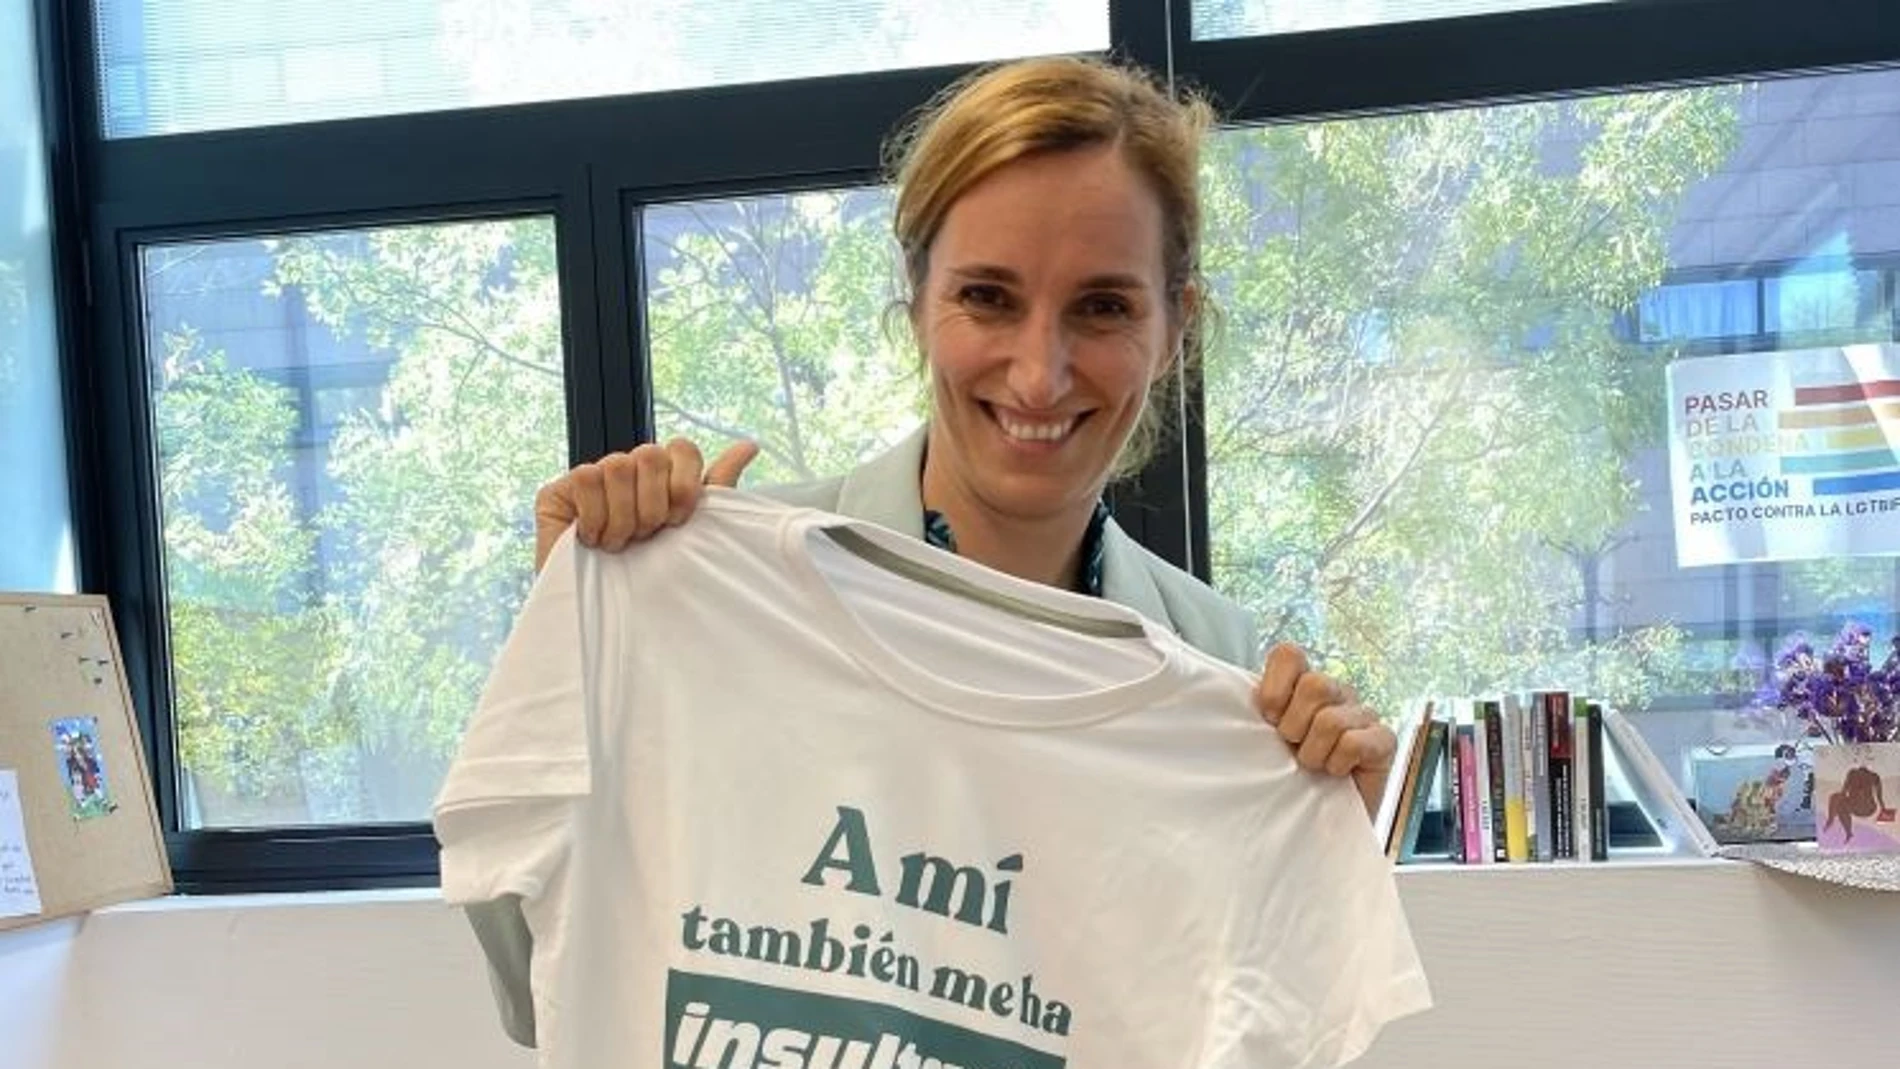 La portavoz de Más Madrid en la Asamblea, Mónica García, con la camiseta que creó con el lema "A mí también me ha insultado Ayuso, ¿y a ti?"